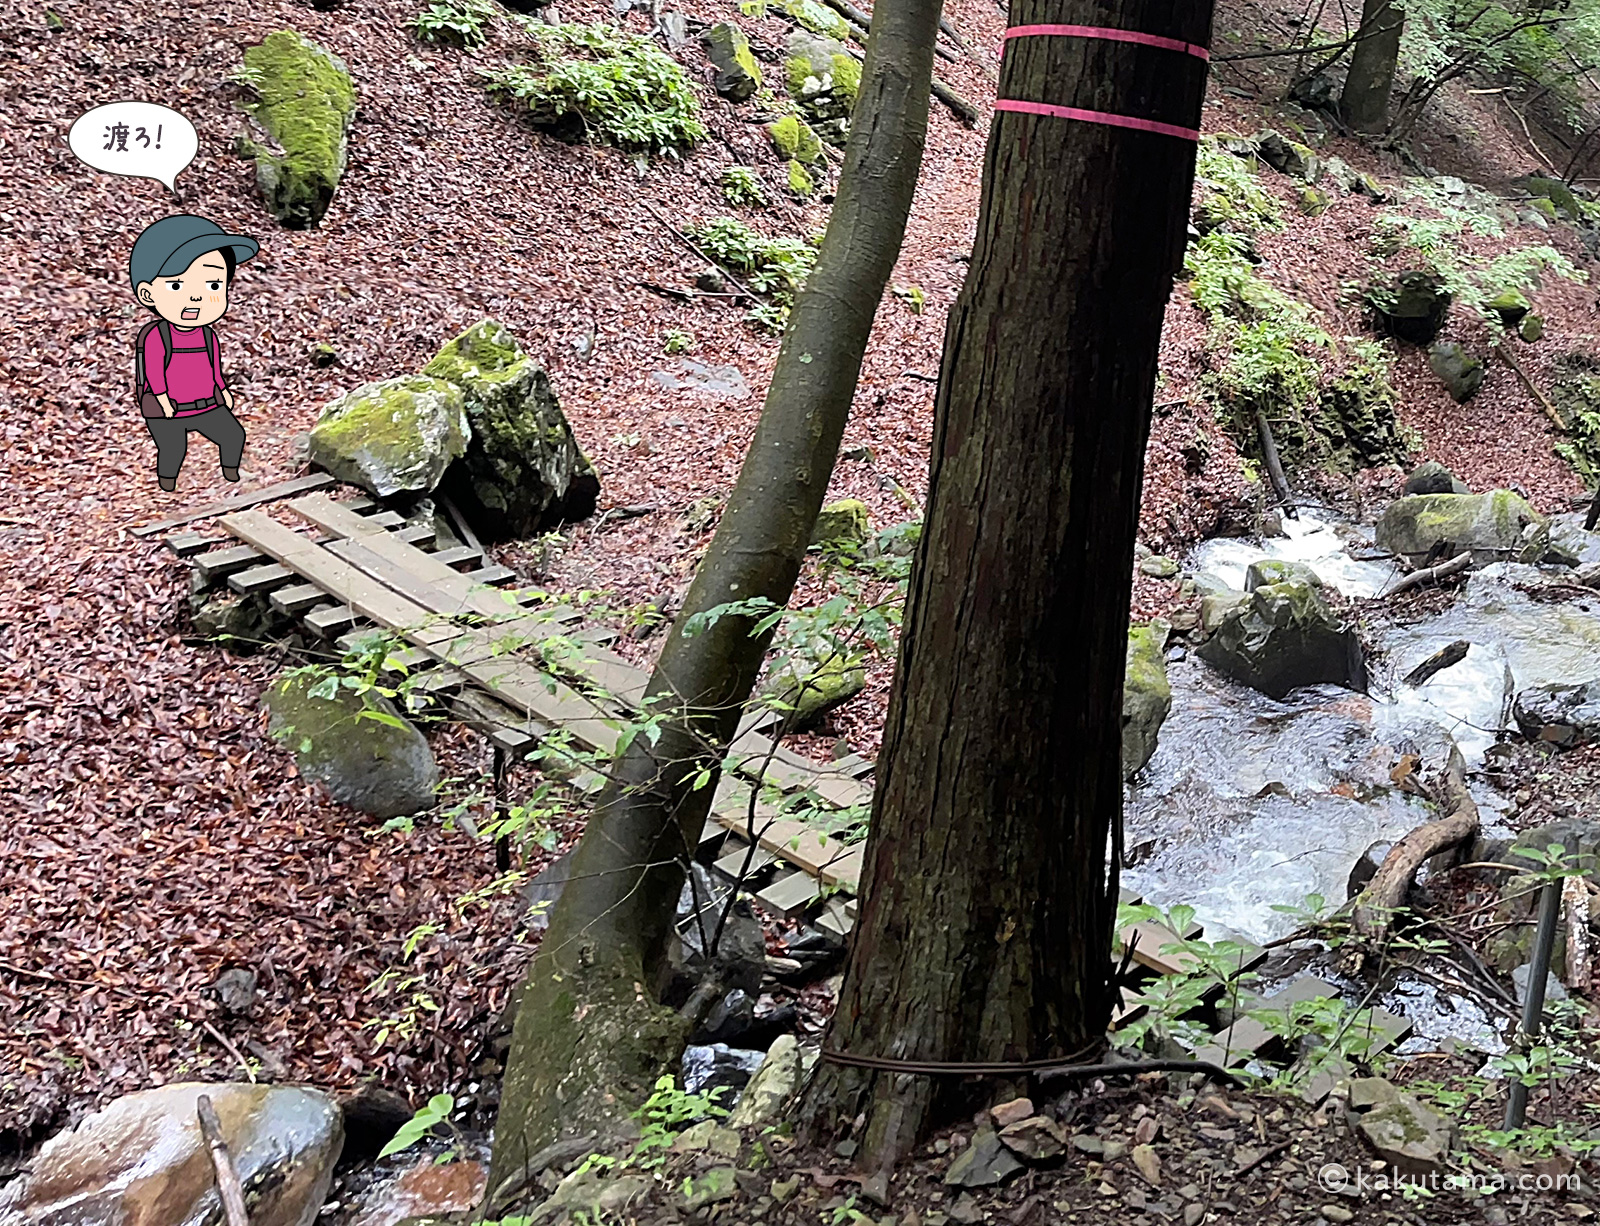 滝子山三丈の滝手前の橋の写真と登山者のイラスト